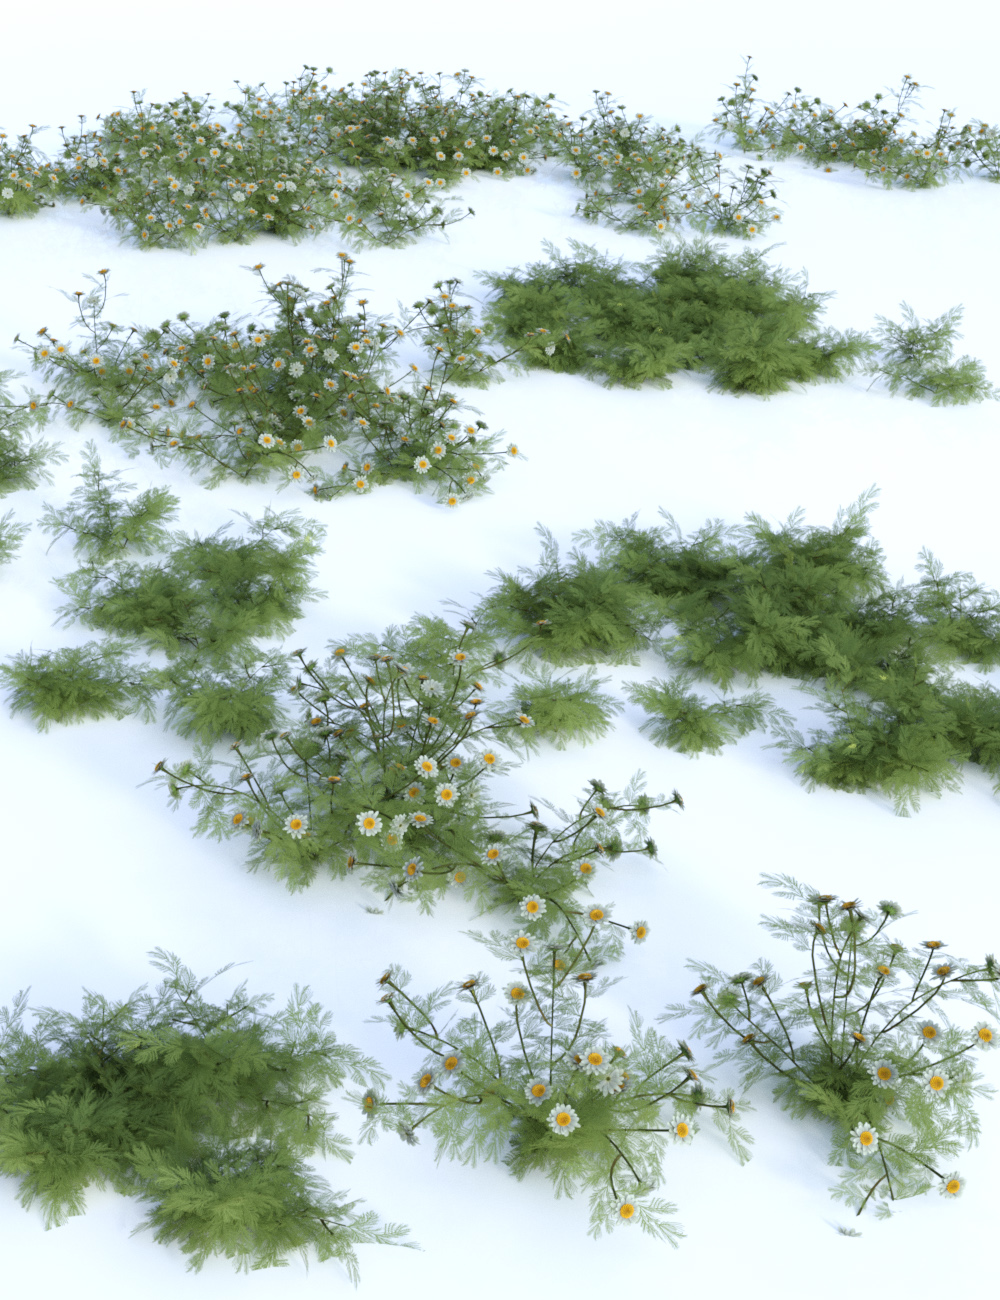 Garden Flowers Vol 1 - Herbs by: MartinJFrost, 3D Models by Daz 3D